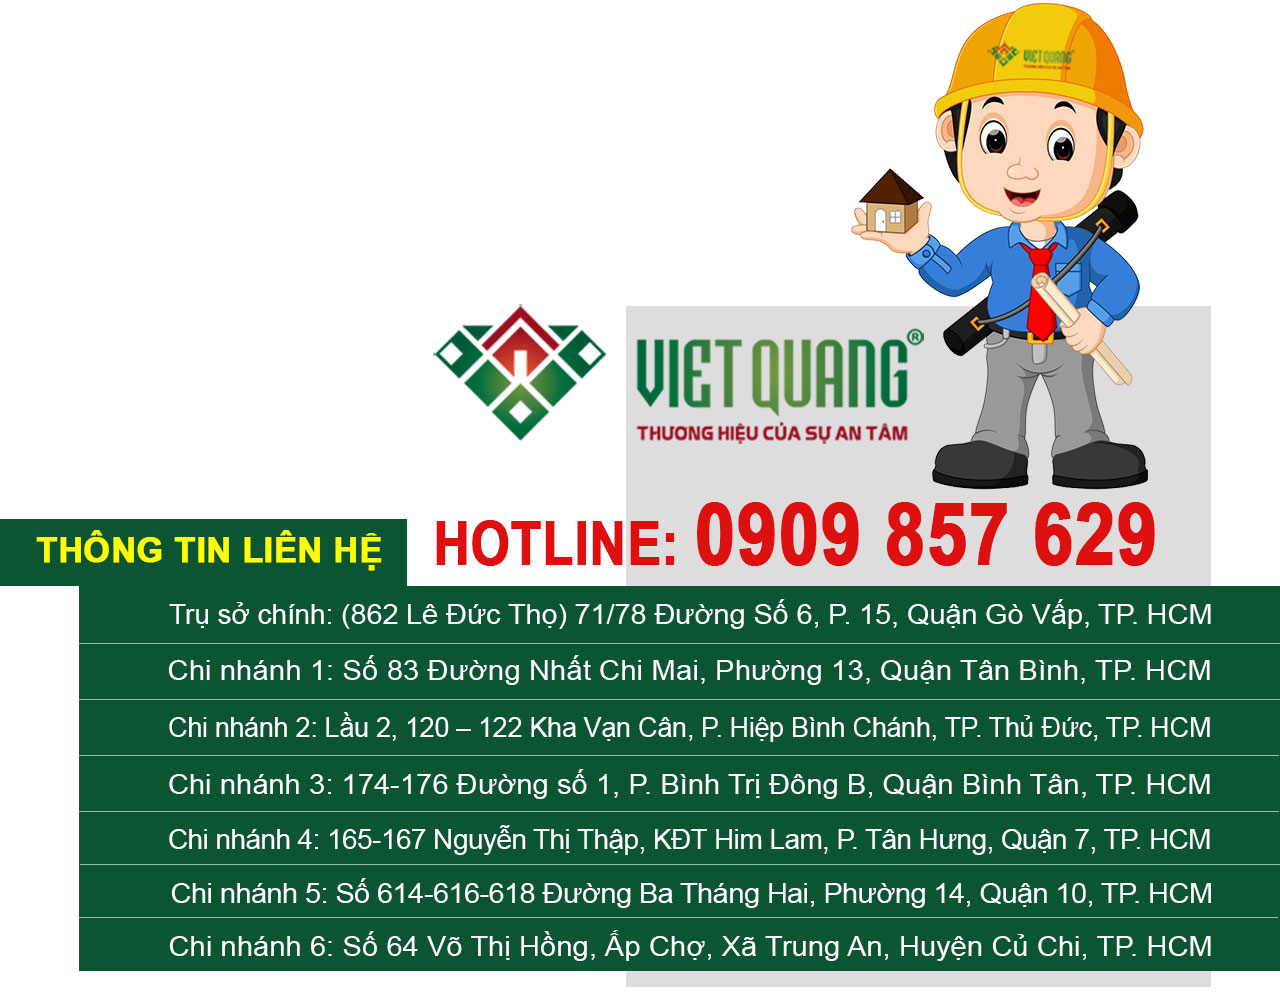 Thông tin liên hệ với công ty xây dựng nhà uy tín tại quận Bình Tân